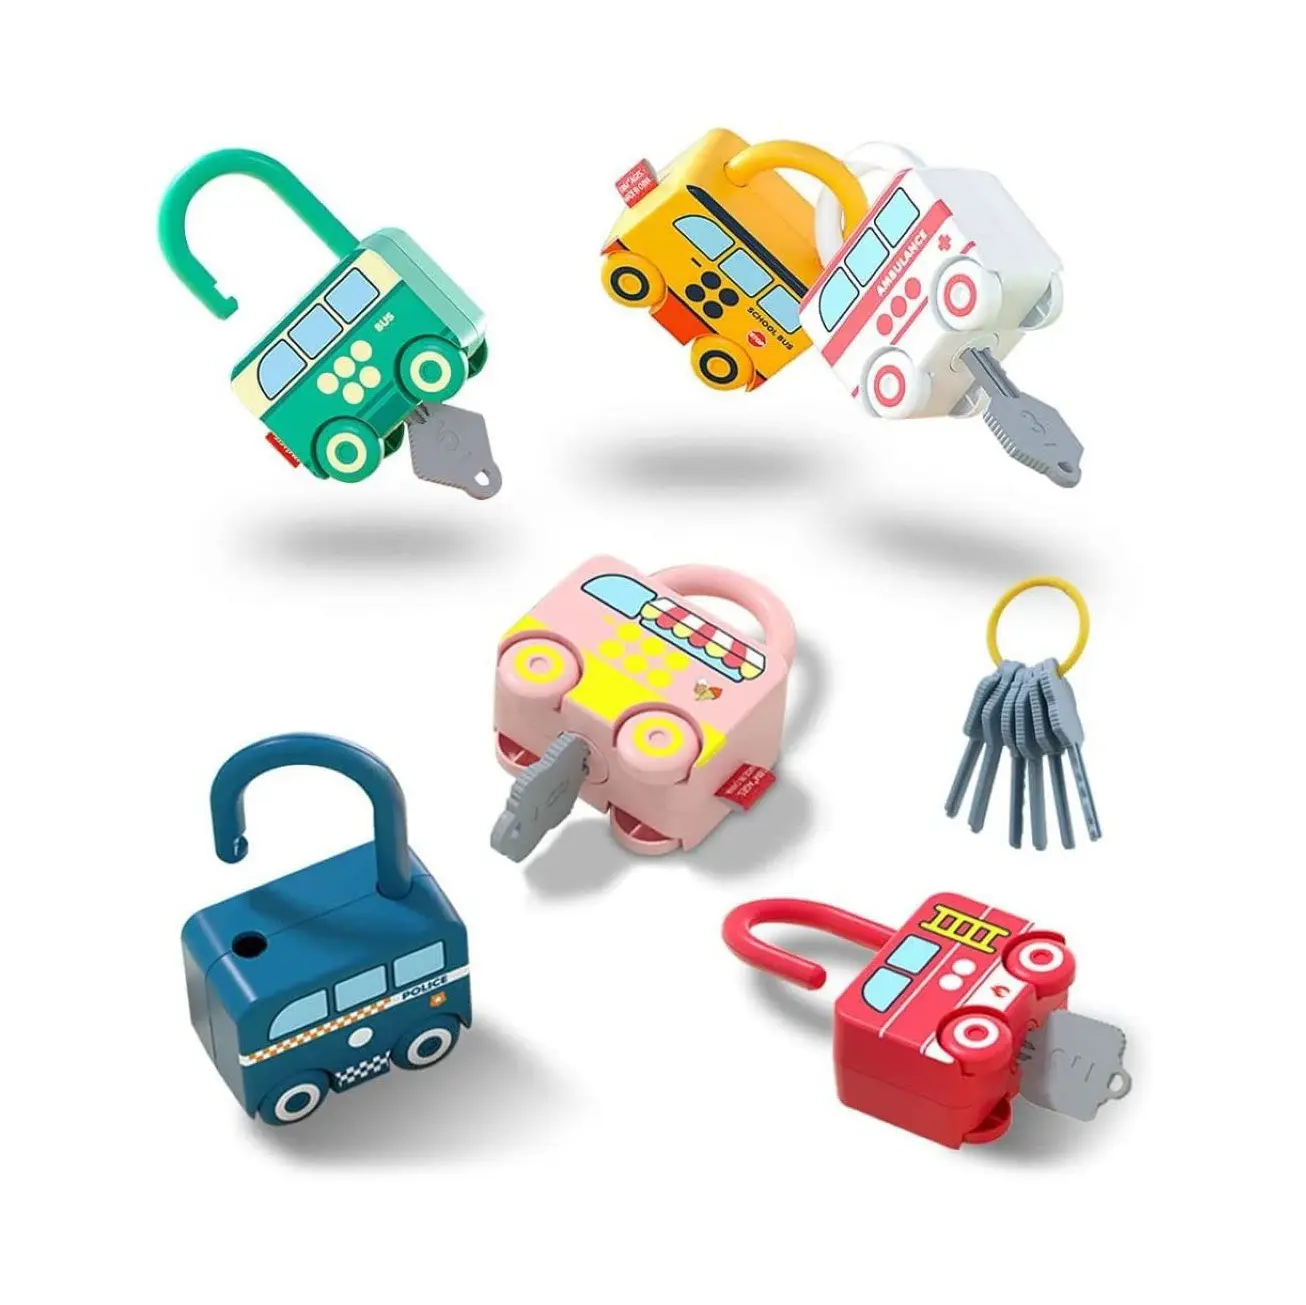 Skylety, 6 piezas, cerradura y juguetes para llaves, cerraduras de aprendizaje con llaves, números de aprendizaje, juguetes educativos para contar, juegos preescolares